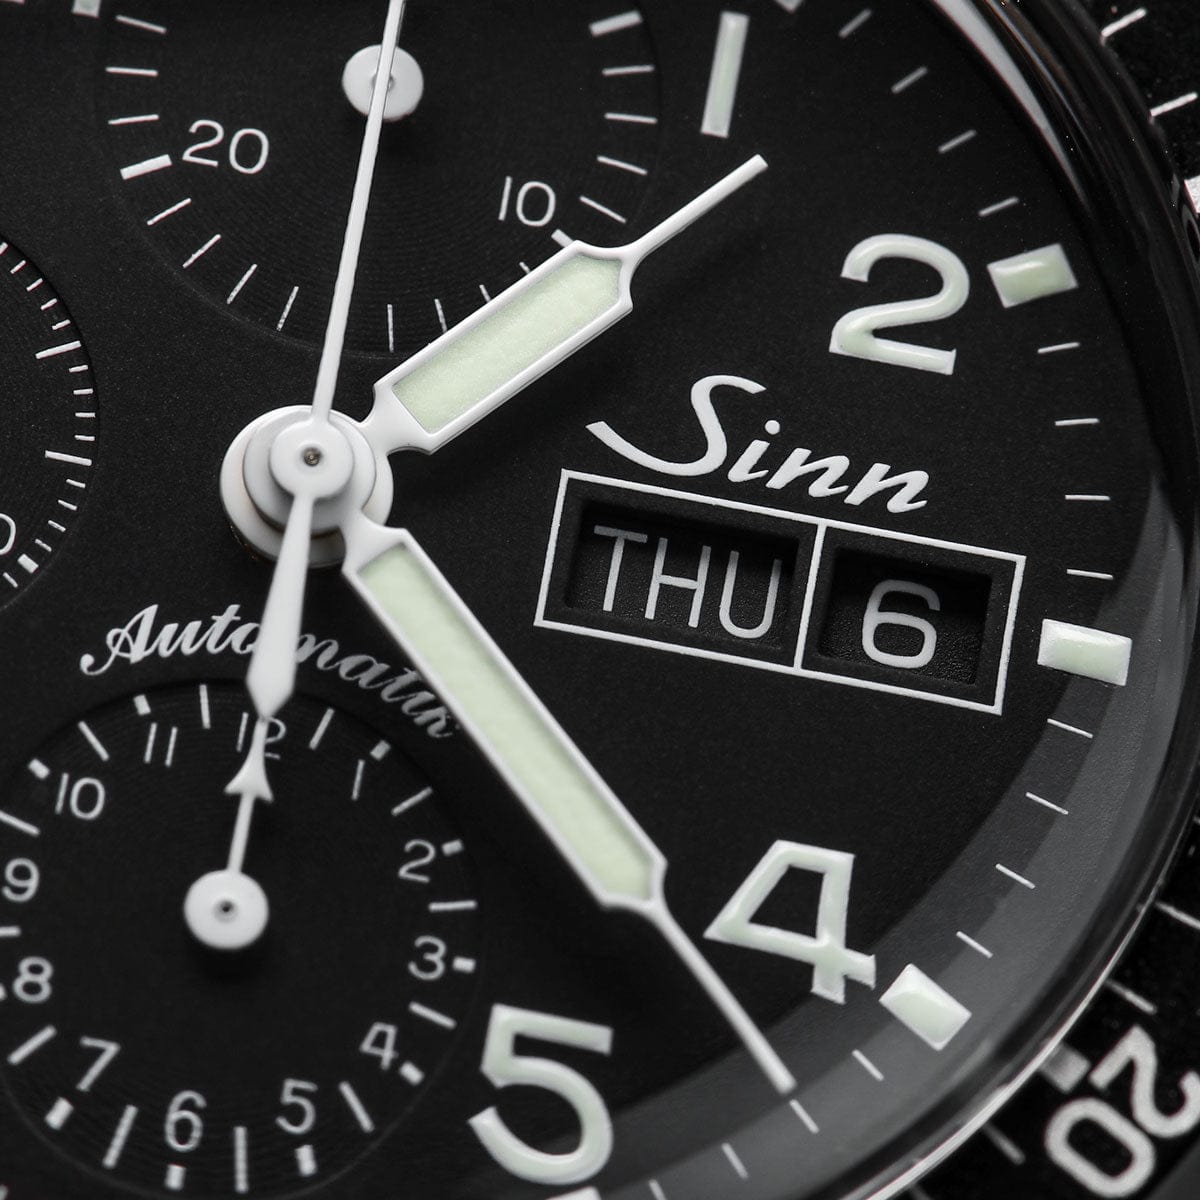 Sinn 103 St Pilot Chronograph Automatic Watch - Black Dial - Solid Bracelet